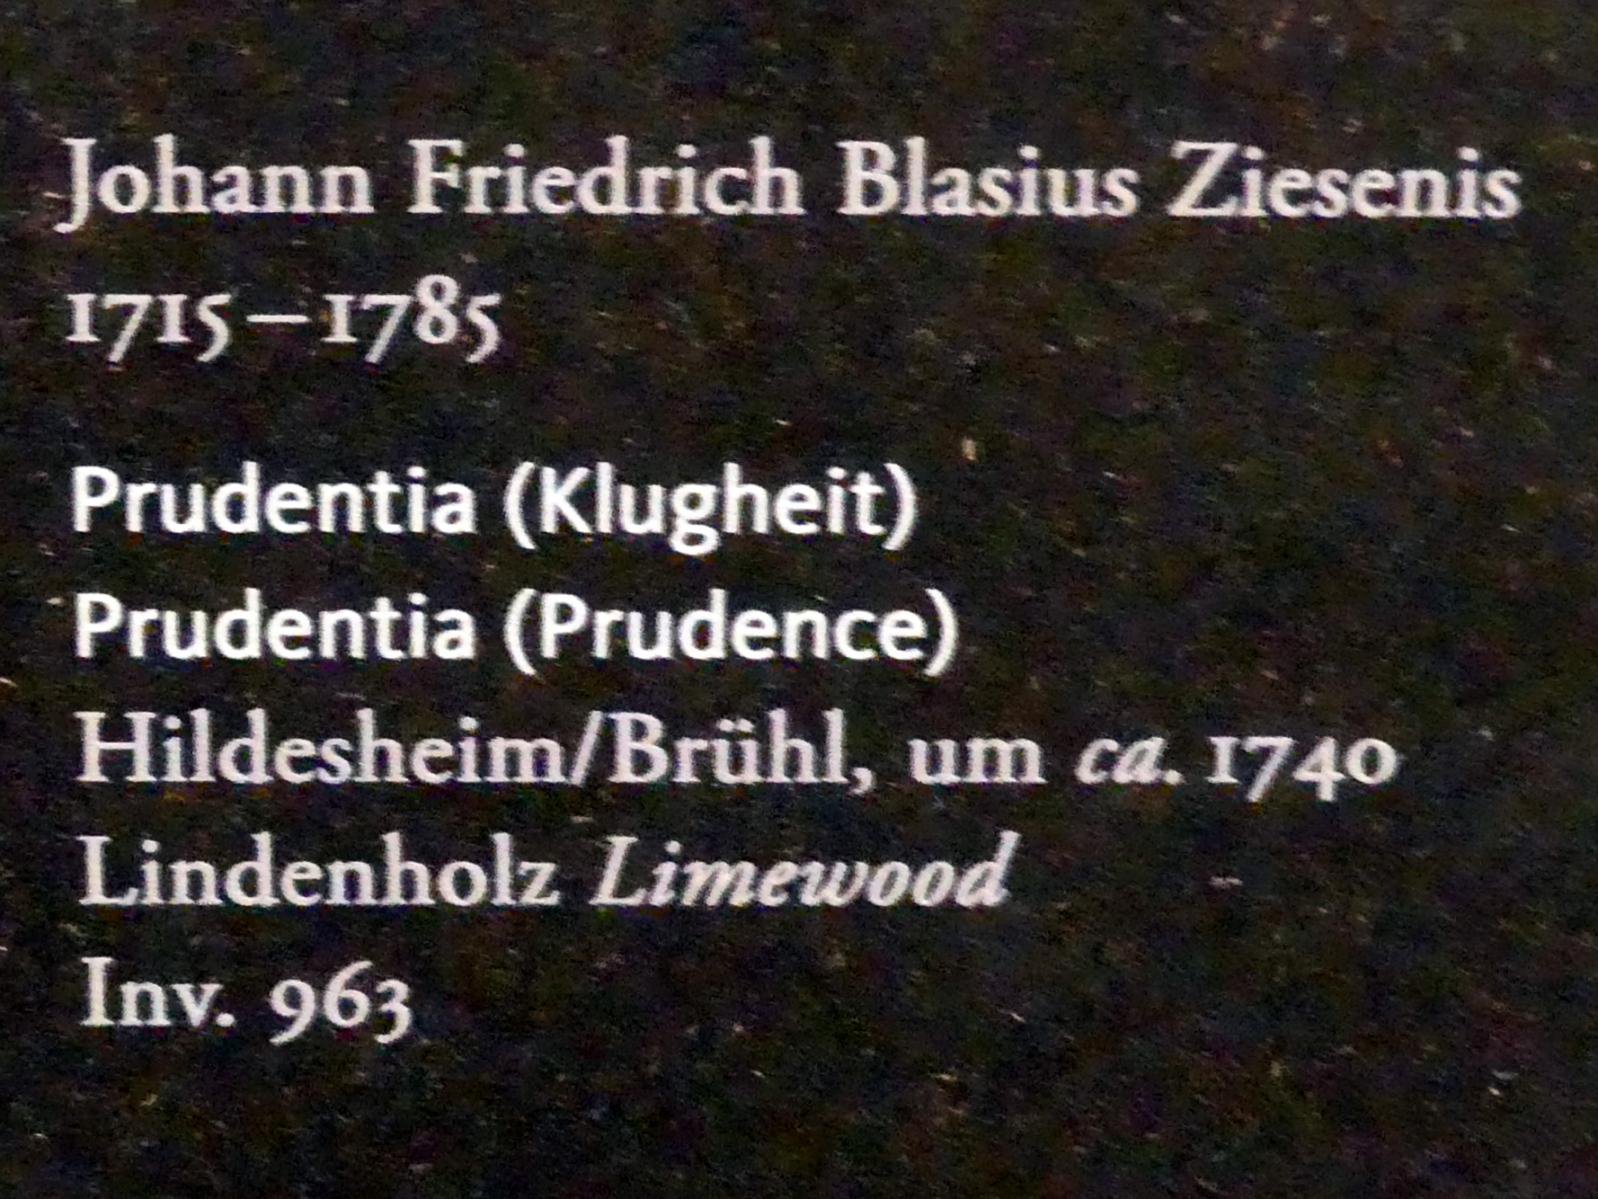 Johann Friedrich Blasius Ziesenis (1740), Prudentia (Klugheit), Frankfurt am Main, Liebieghaus Skulpturensammlung, Rokoko - mehr Licht, um 1740, Bild 2/2